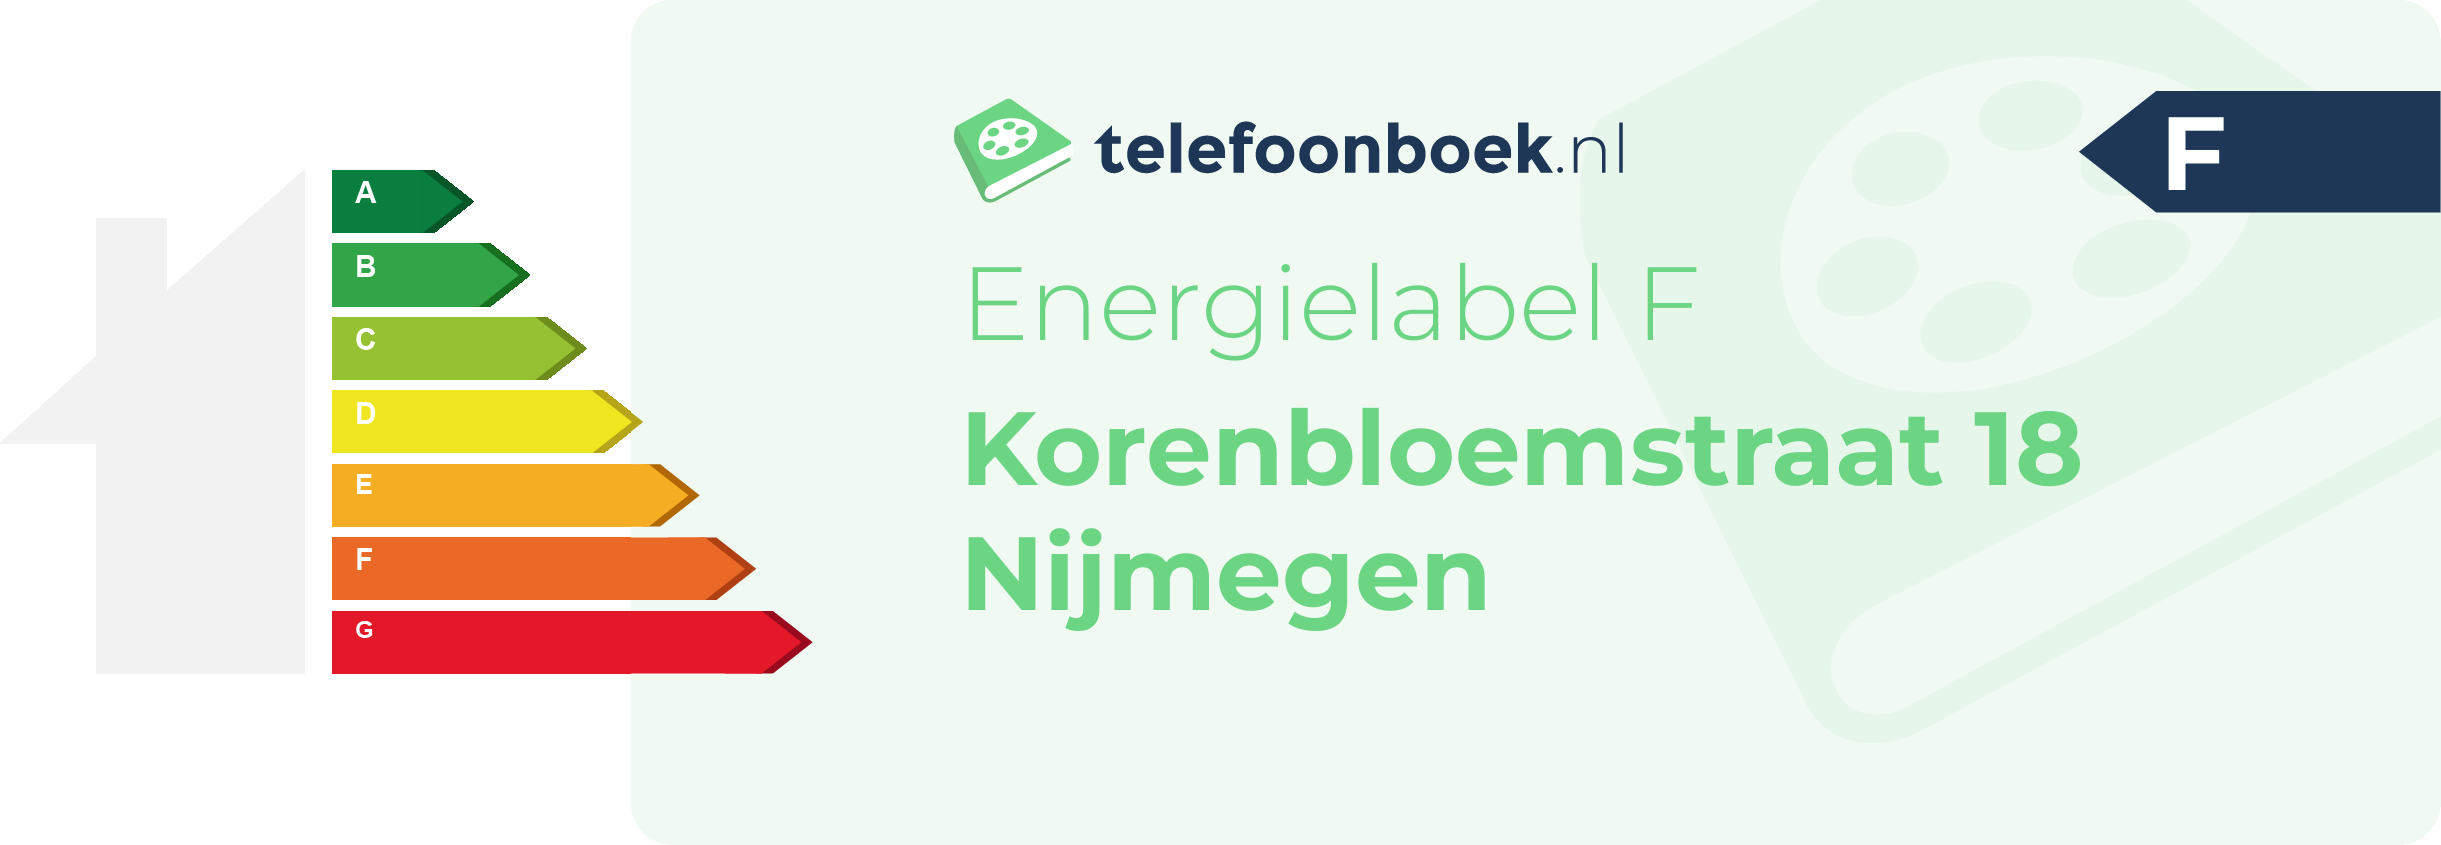 Energielabel Korenbloemstraat 18 Nijmegen